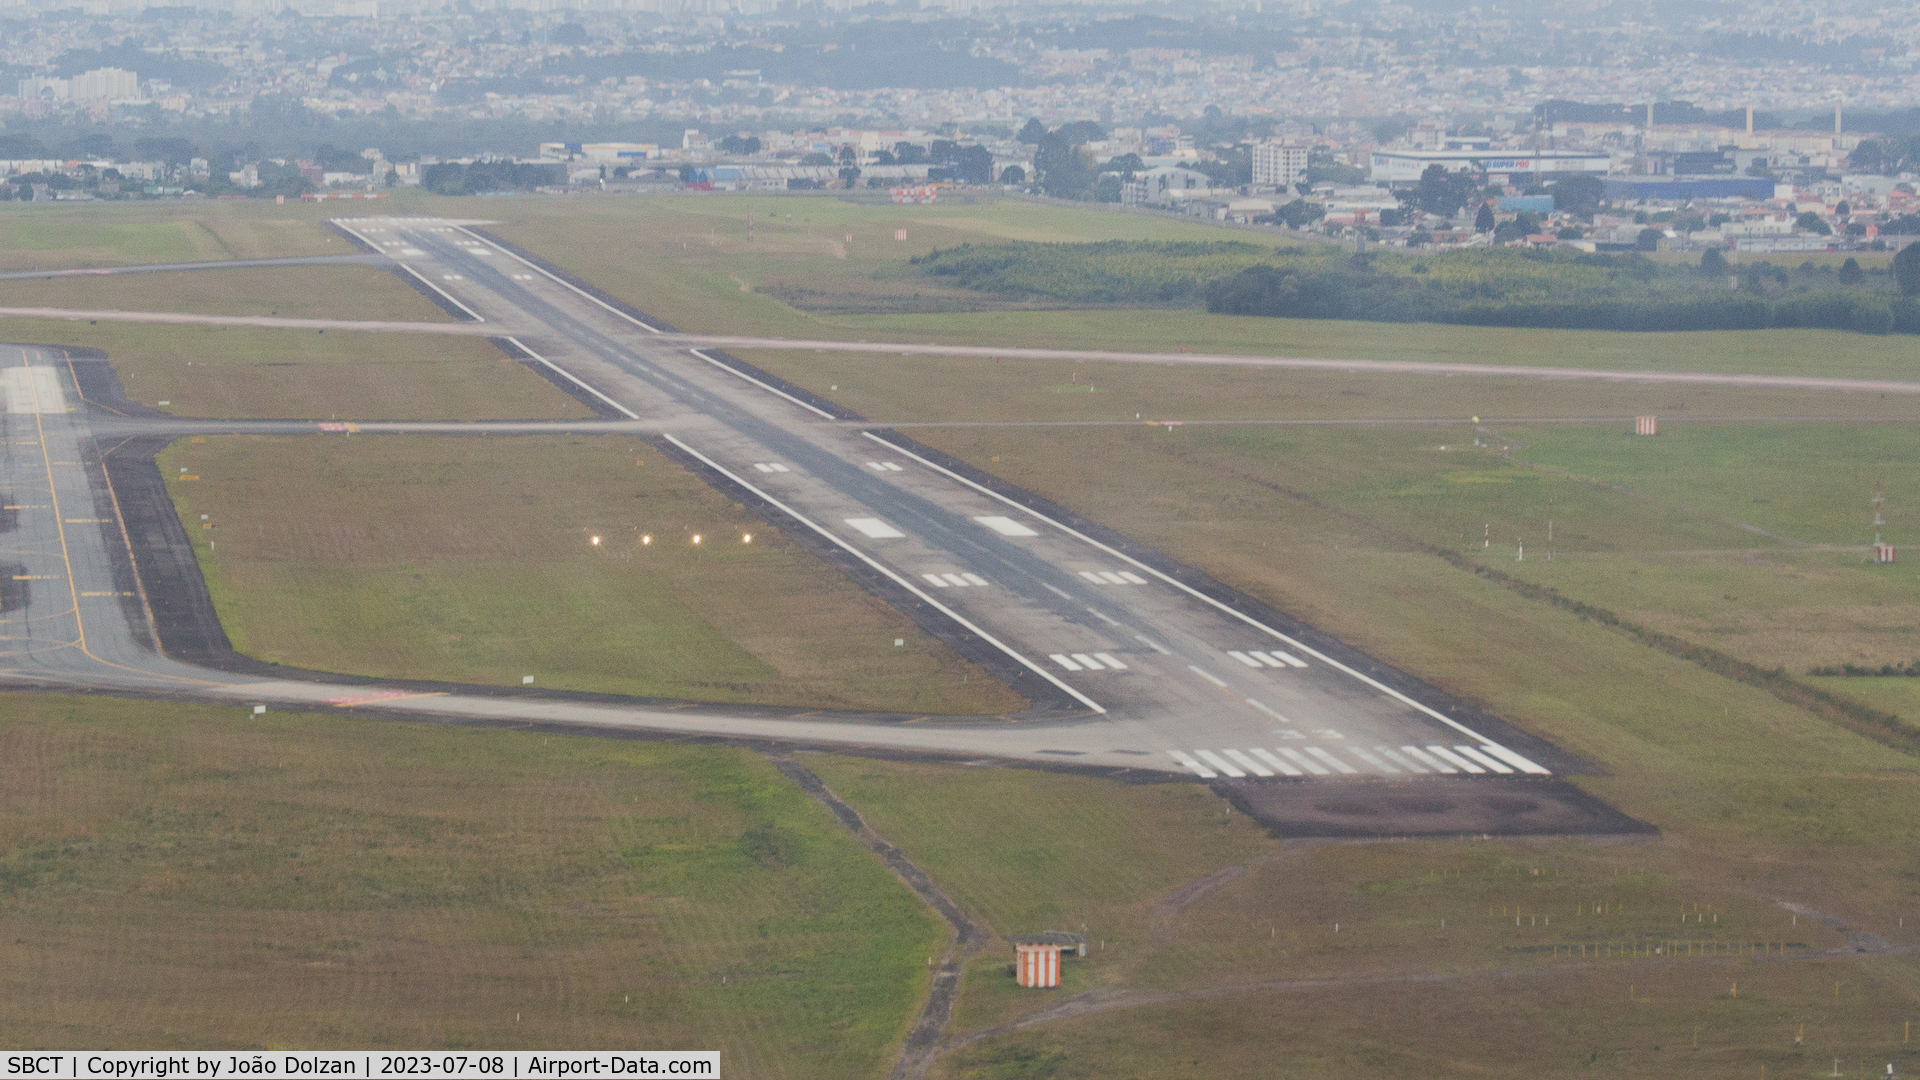 Afonso Pena International Airport, Curitiba, Paraná Brazil (SBCT) - Runway 33 of SBCT.